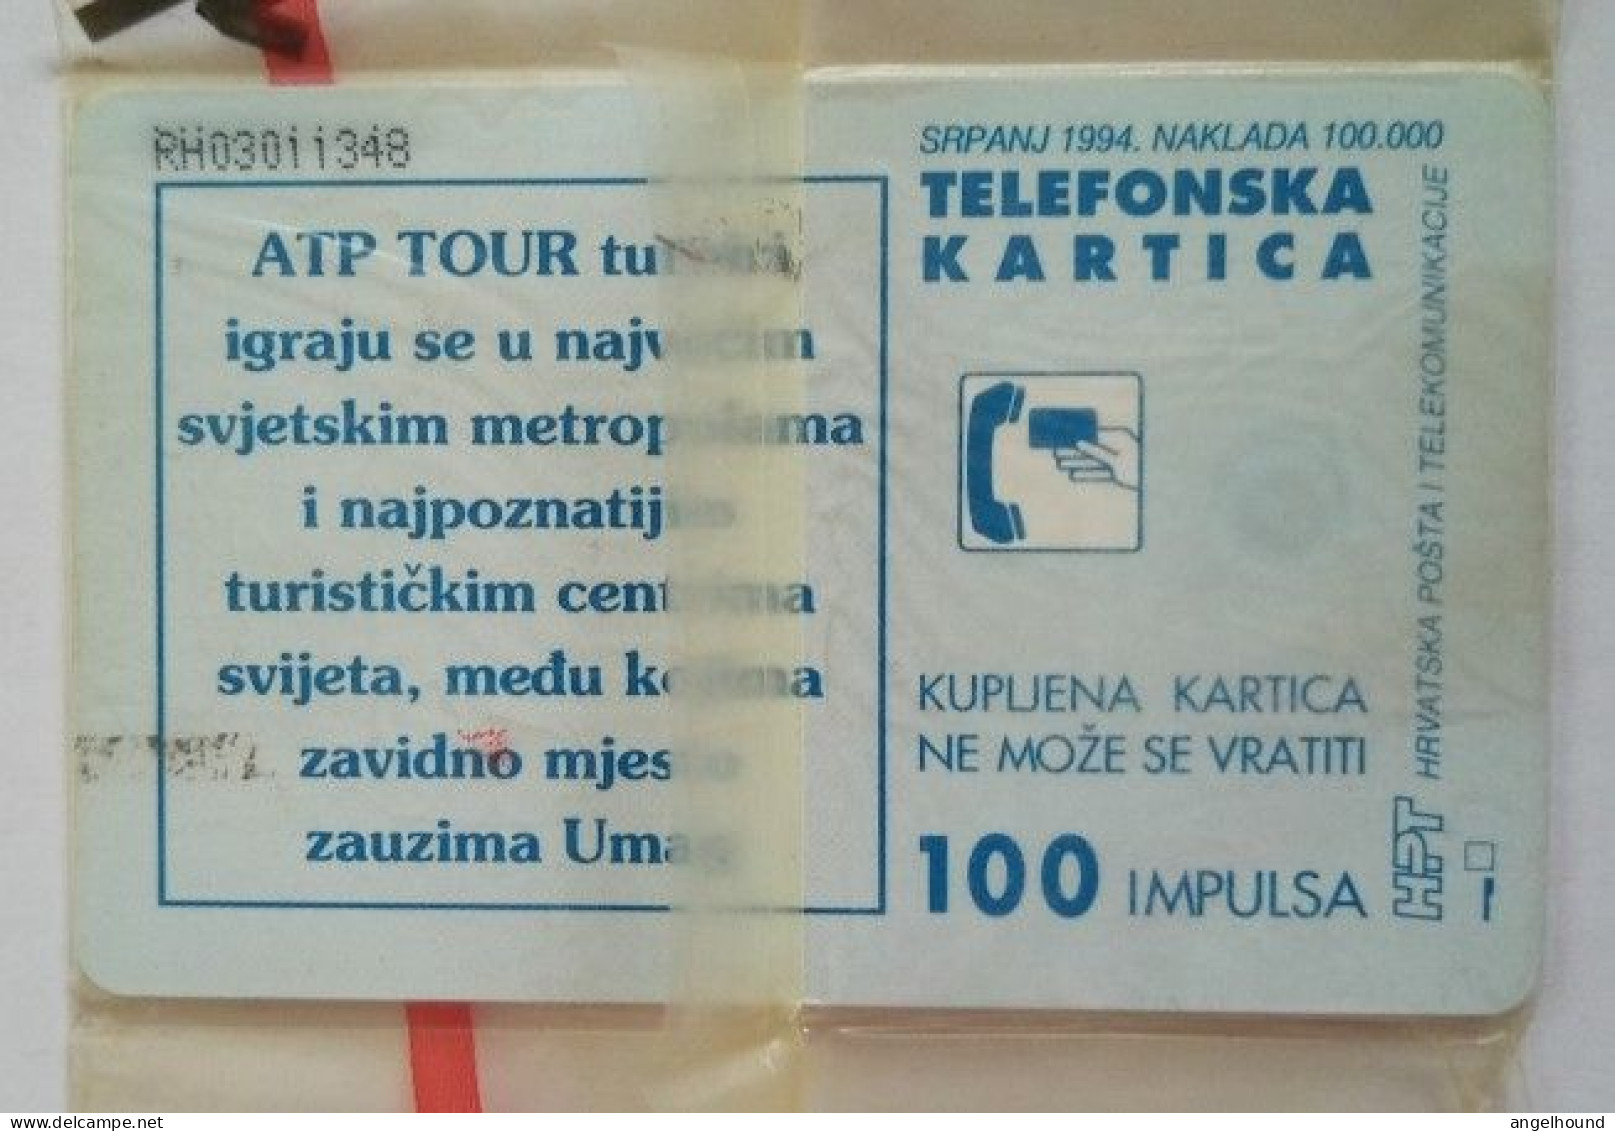 Croatia 100 Units MINT Chip Card - ATP Umag ' 94 - Croatia